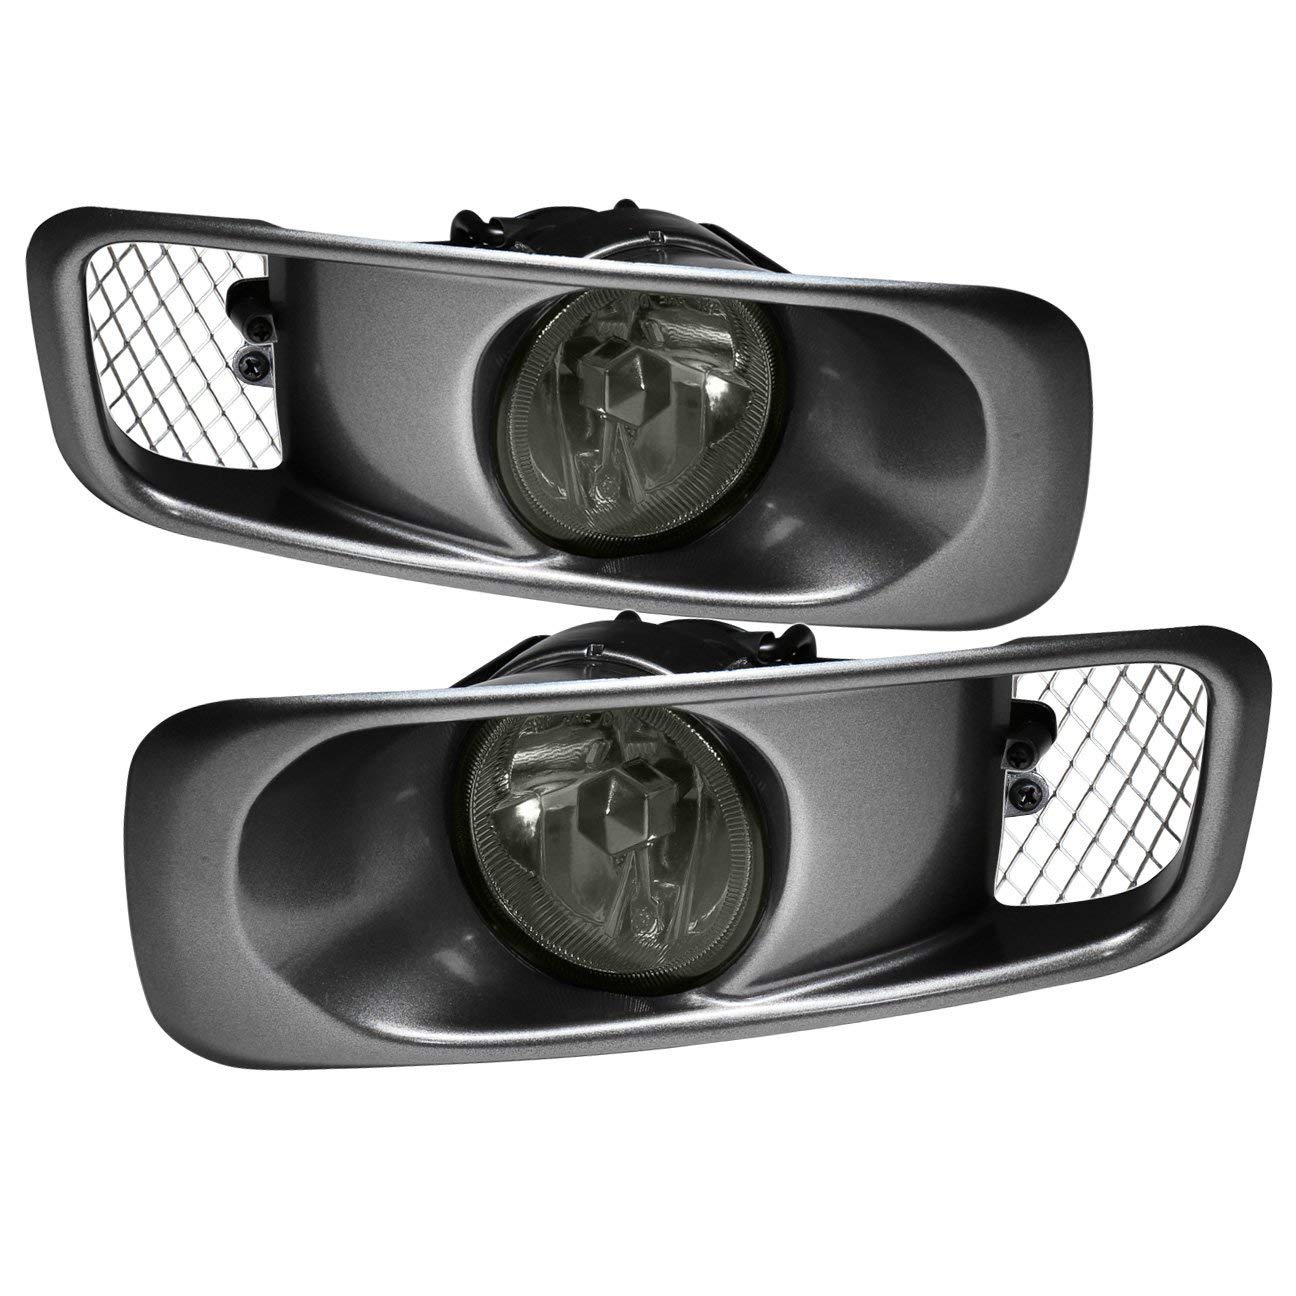 Luces de niebla de la luz antiniebla delantera de la conducción de la lente ahumada para Honda Civic 99-00